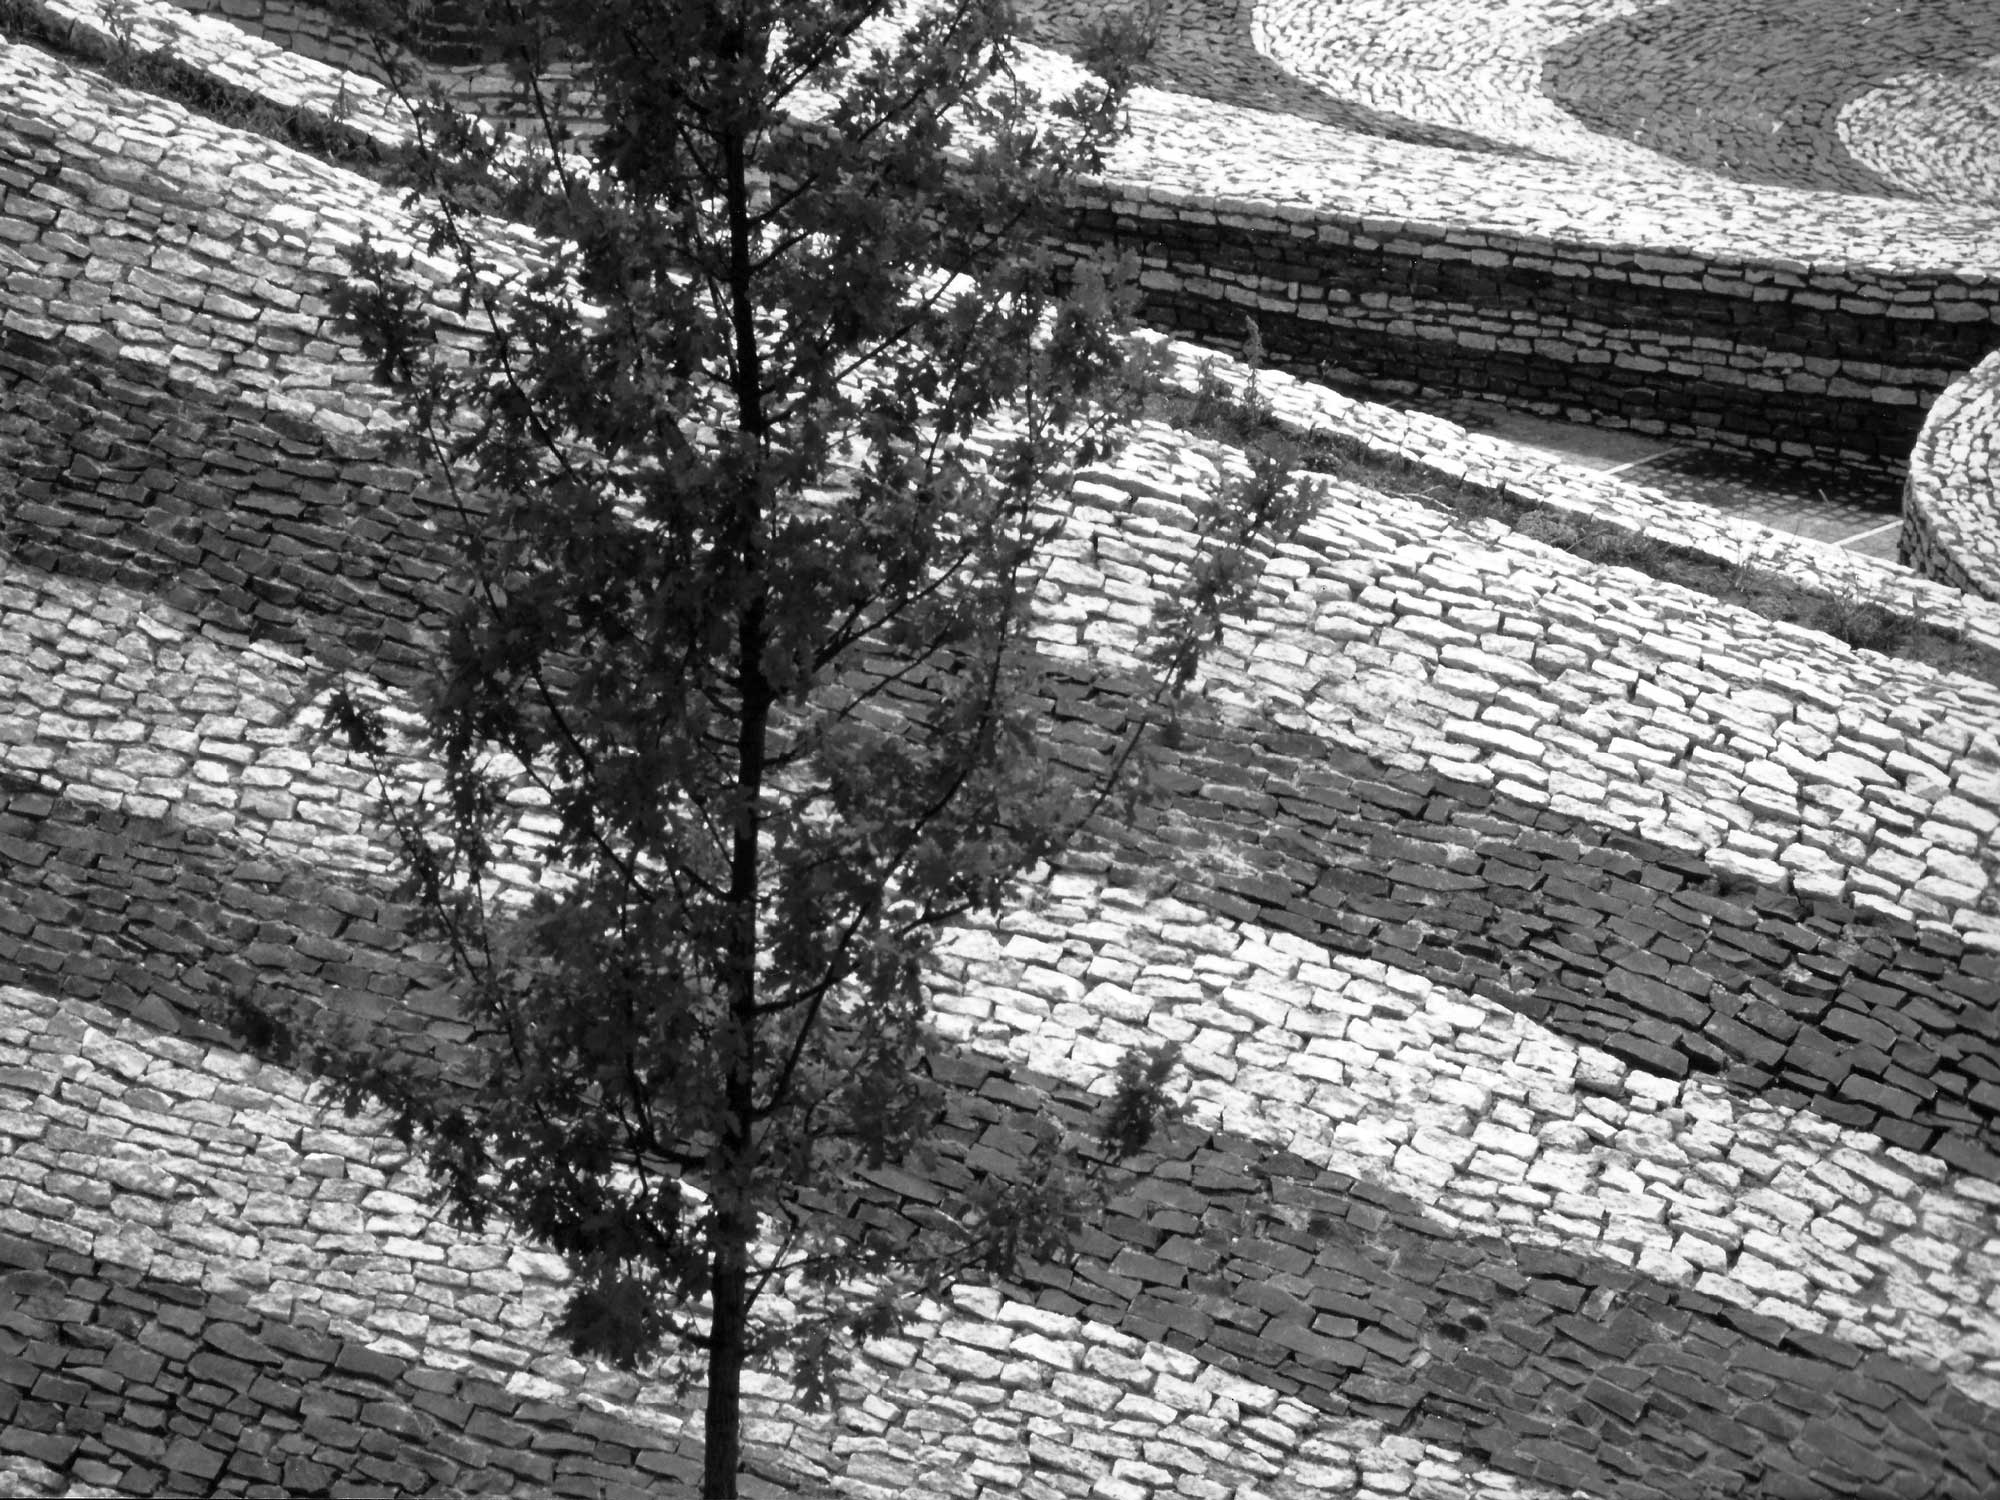 16 - Piazza con monumento commemorativo a Tuscania (VT) - Vista di dettaglio della pavimentazione